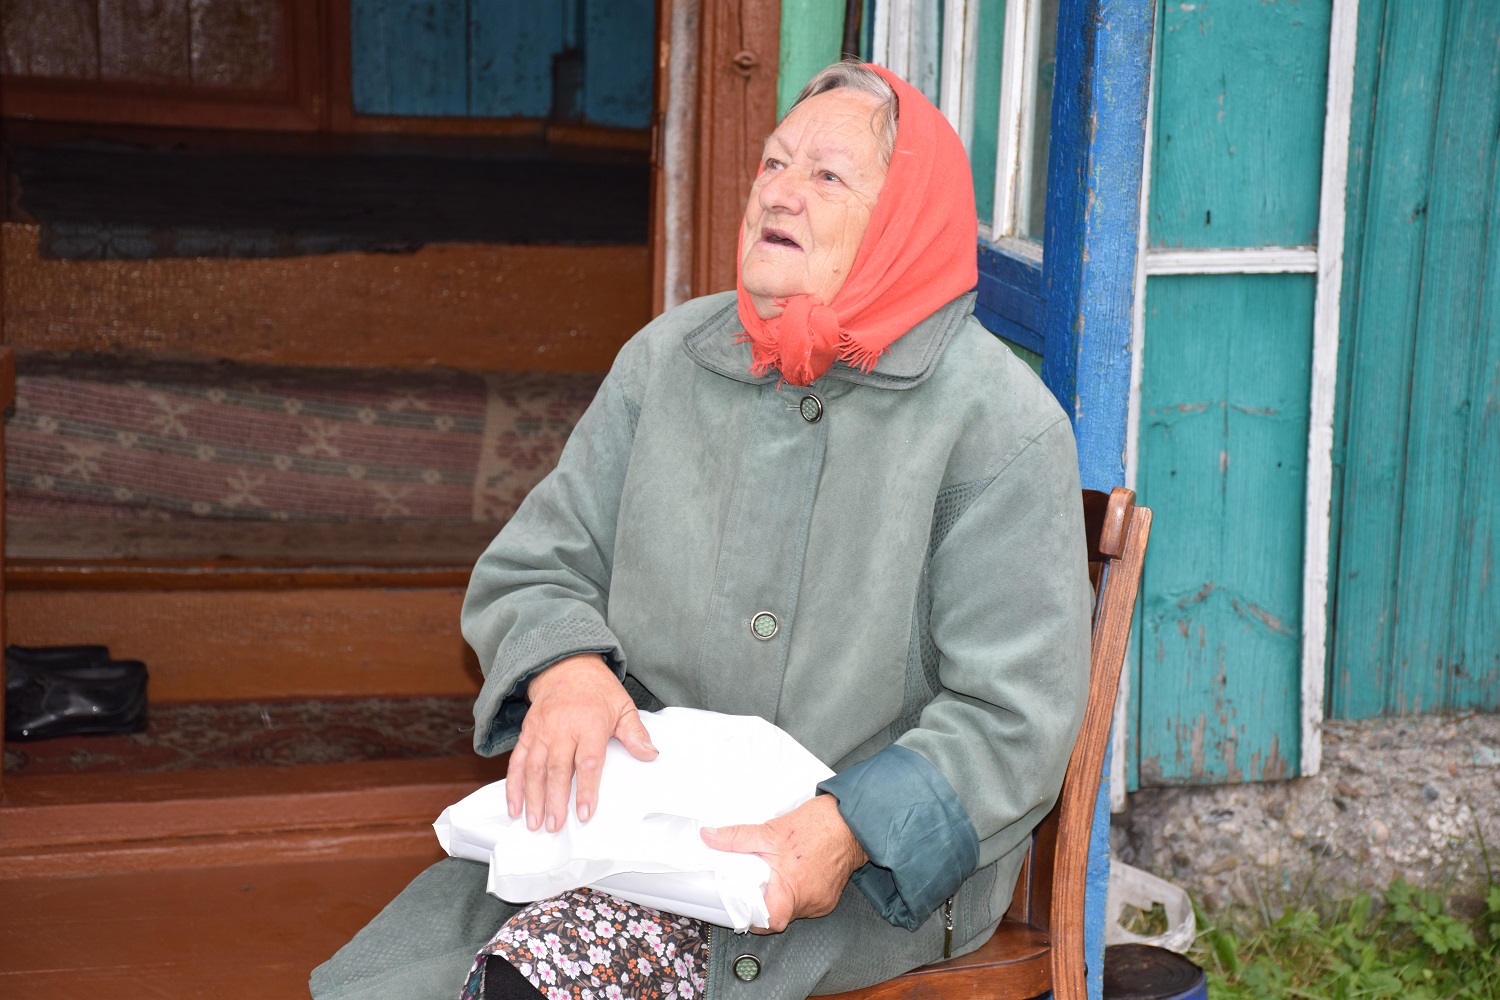 100 представителей старшего поколения поздравили горняки разреза Березовский в Новокузнецком районе. Стройсервис